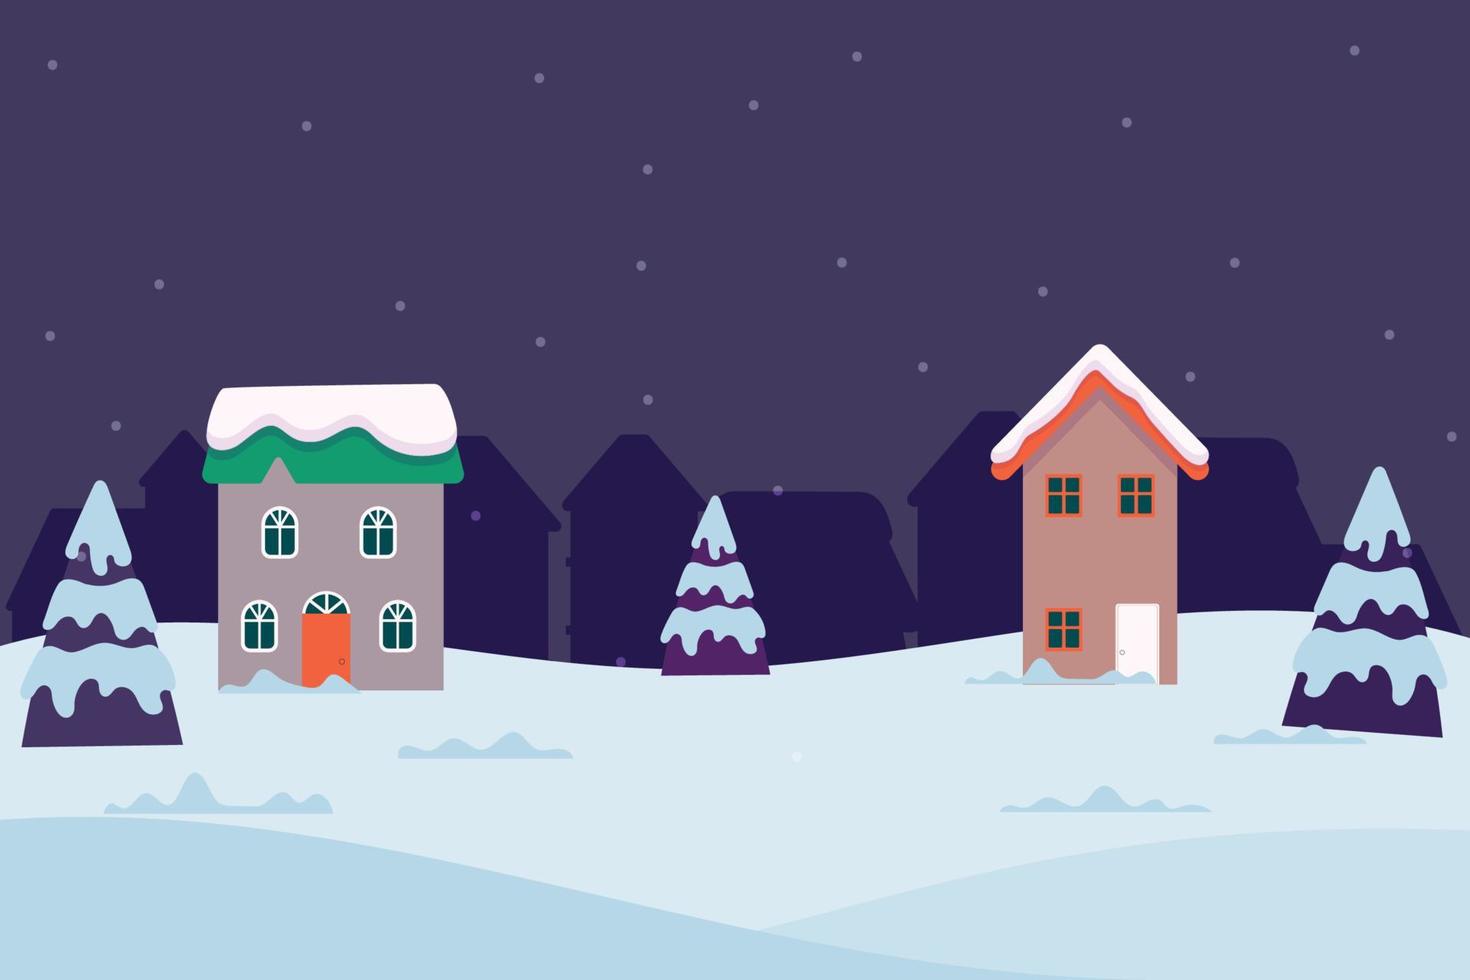 vinter- natur.landskap med jul träd och hus den är snowing.illustration,vykort och baner. vektor